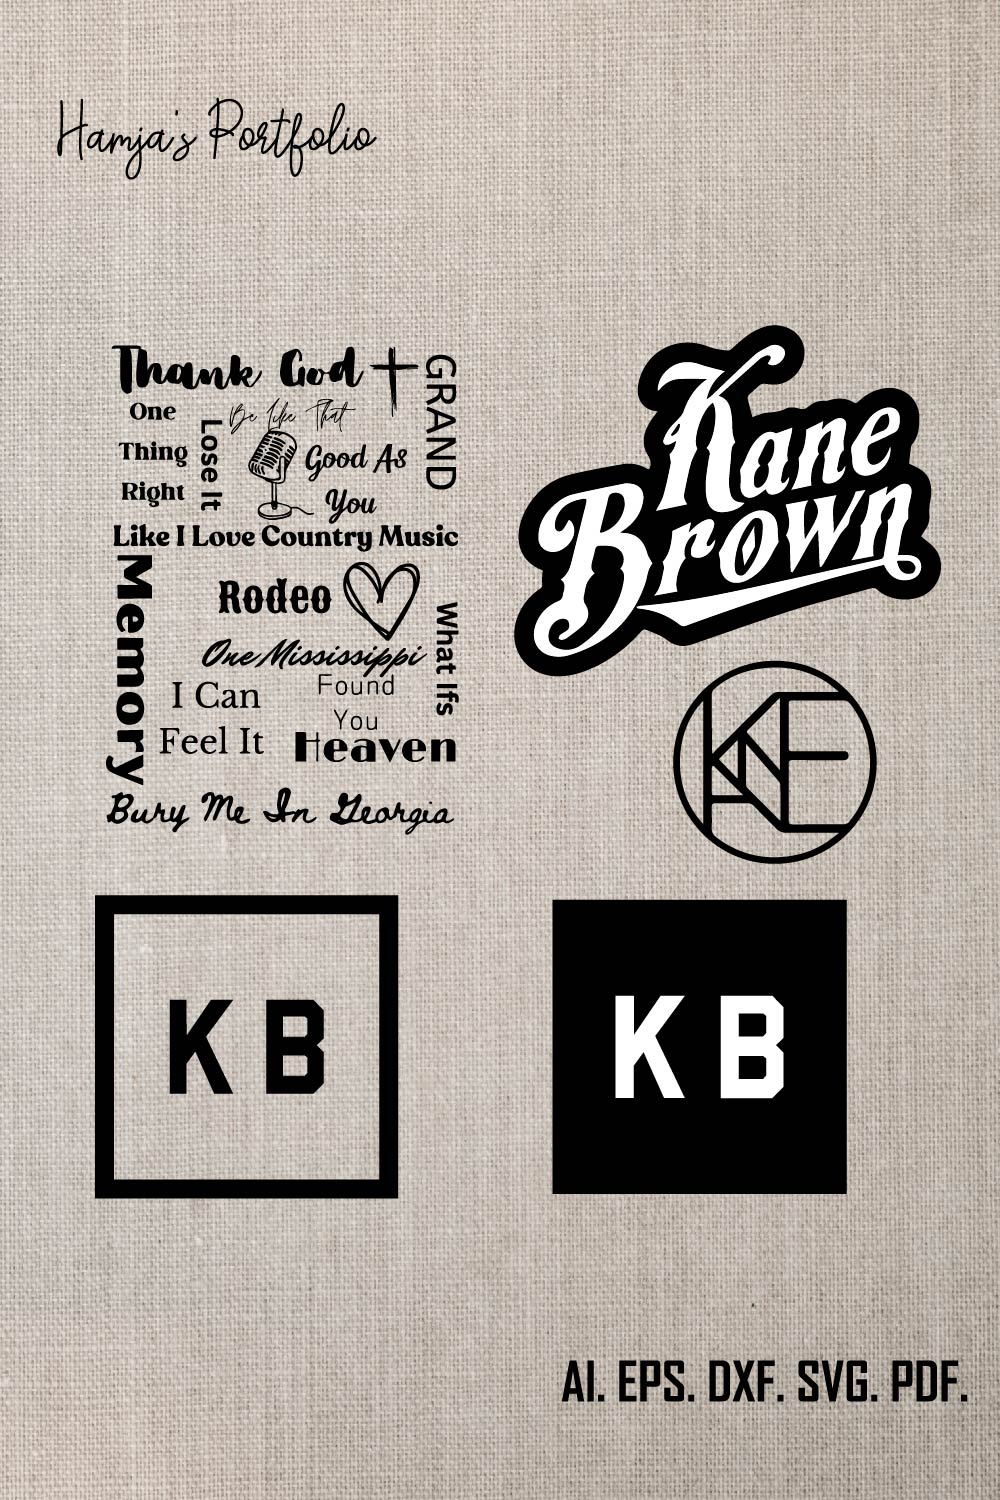 Kane Brown Logo Bundle SVG Digital File, Kane Brown Svg, KB Svg,Kane Brown Song Series Shirt Design SVG Graphic Design File pinterest preview image.